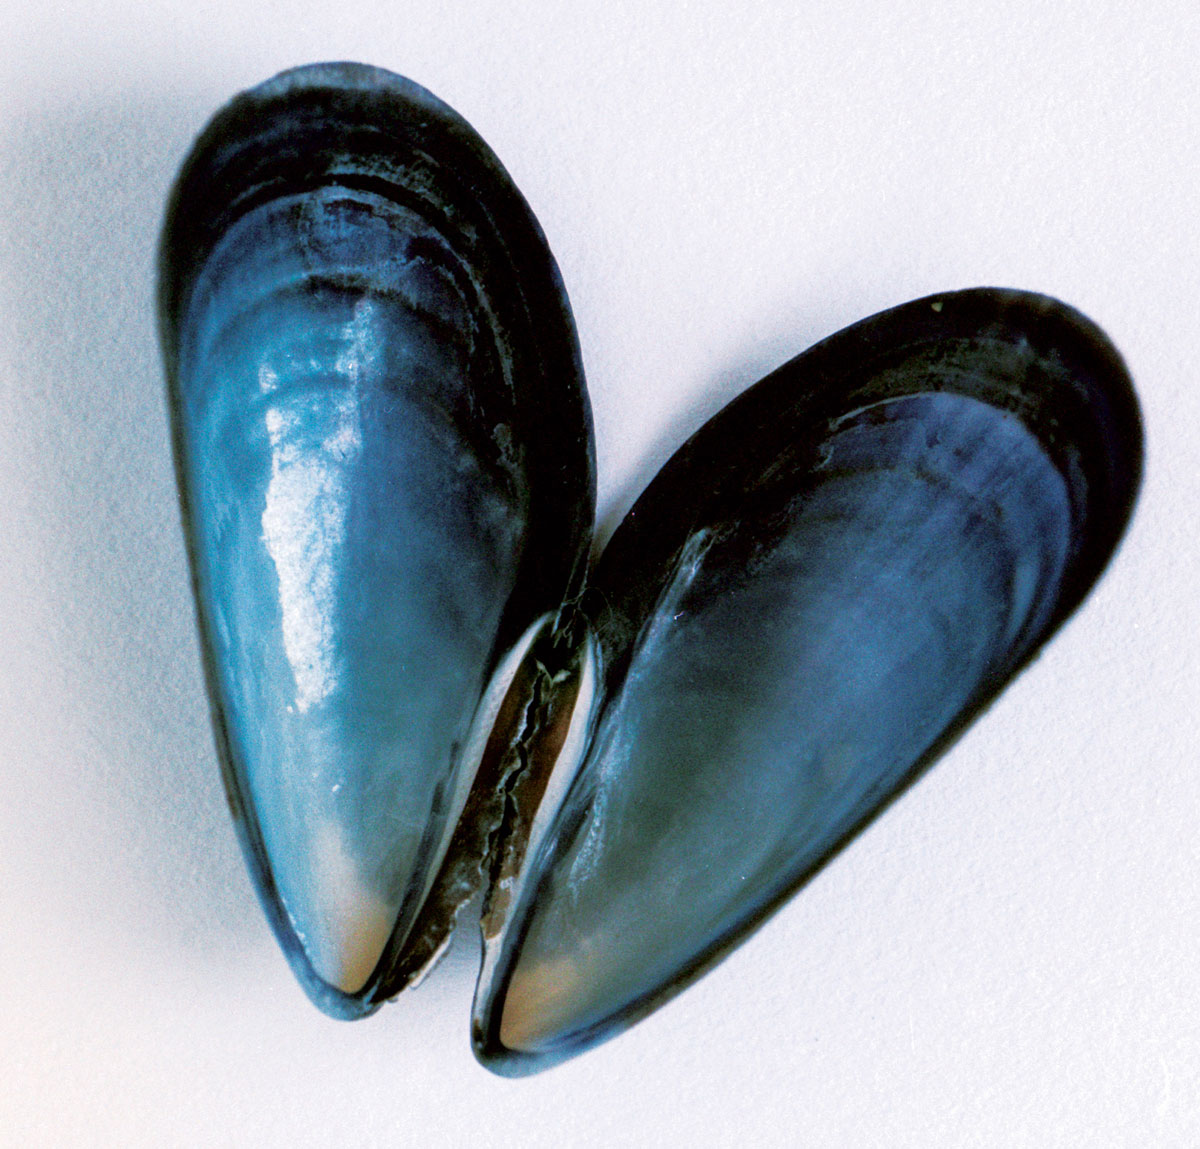 Photograph of an open blue mussel shell. 